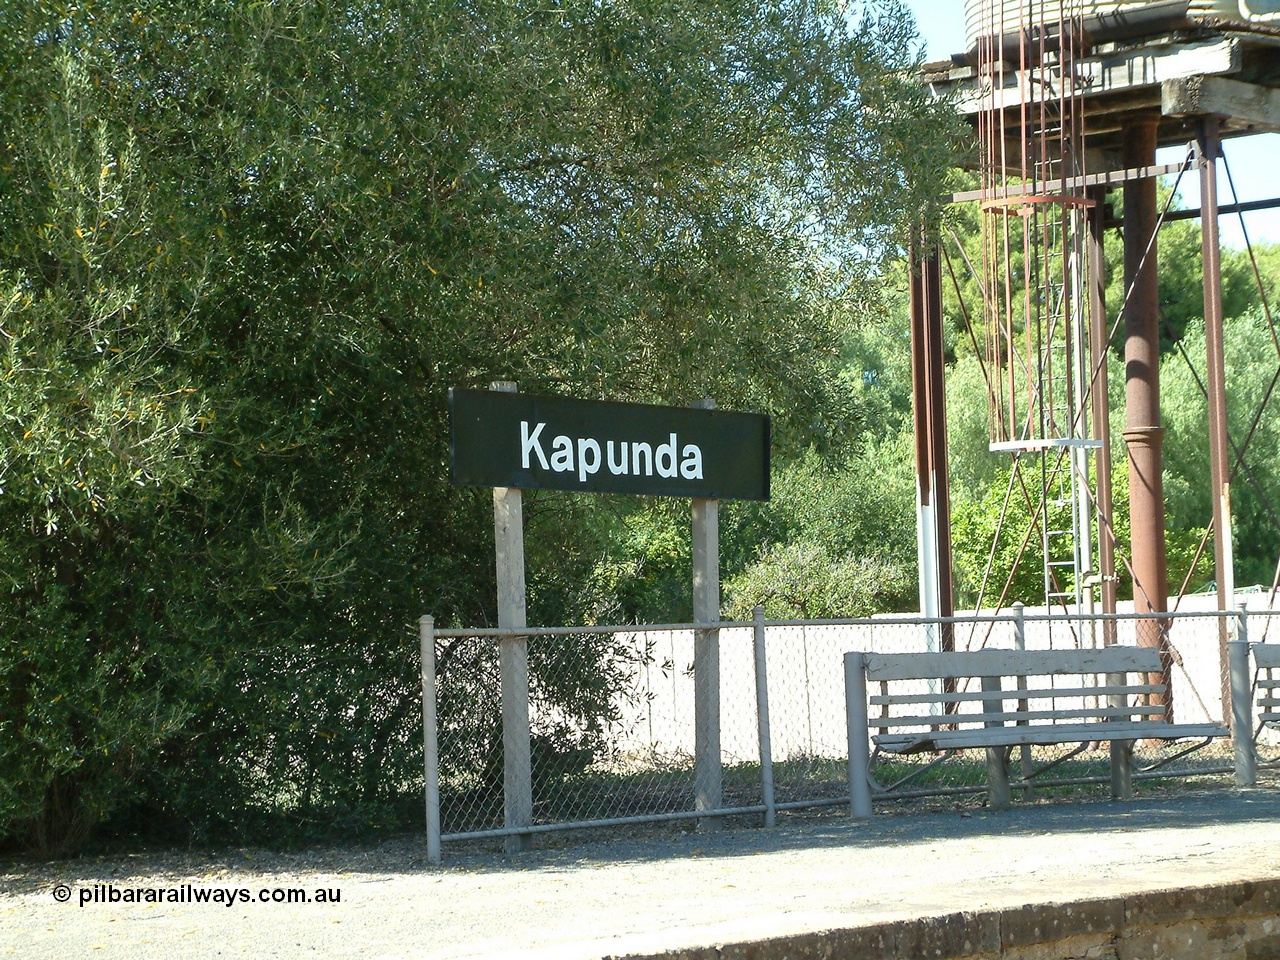 030403 111435
Kapunda station sign on platform looking south east.
